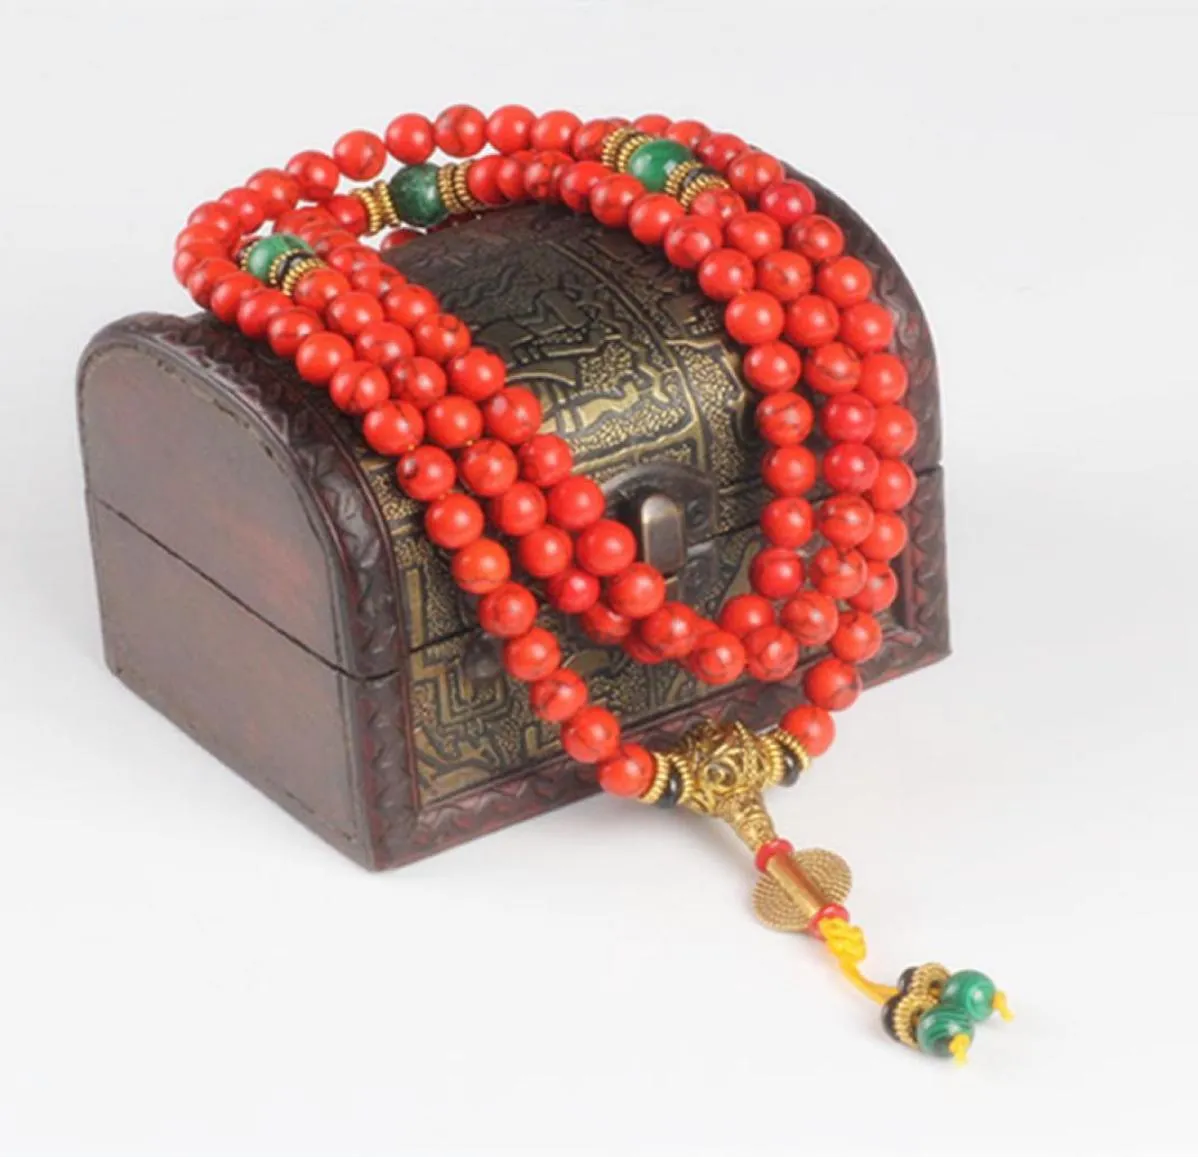 Sennier 108 Bracelet de corail rouge perles de pierre naturelle Collier de prière bouddhiste Bracelets Bouddha Meditation Y2001073184246